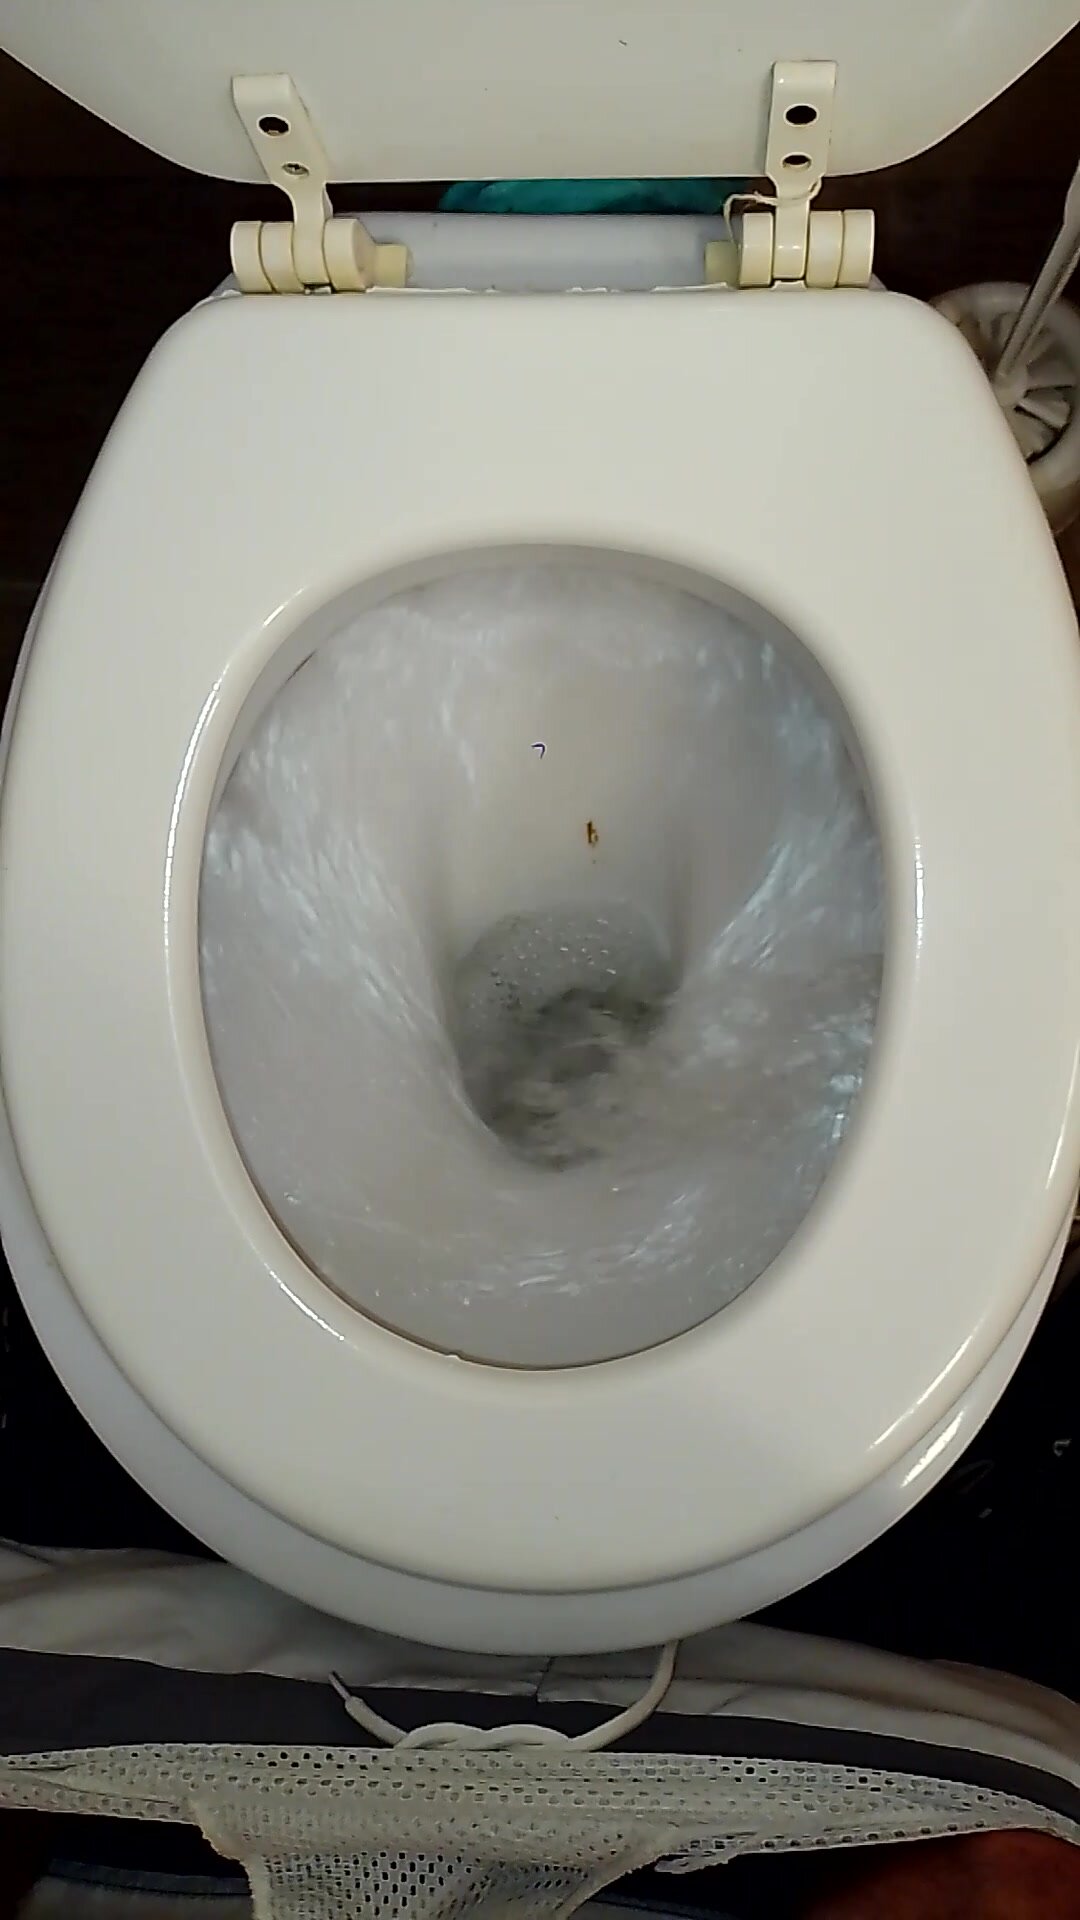 flushing shit